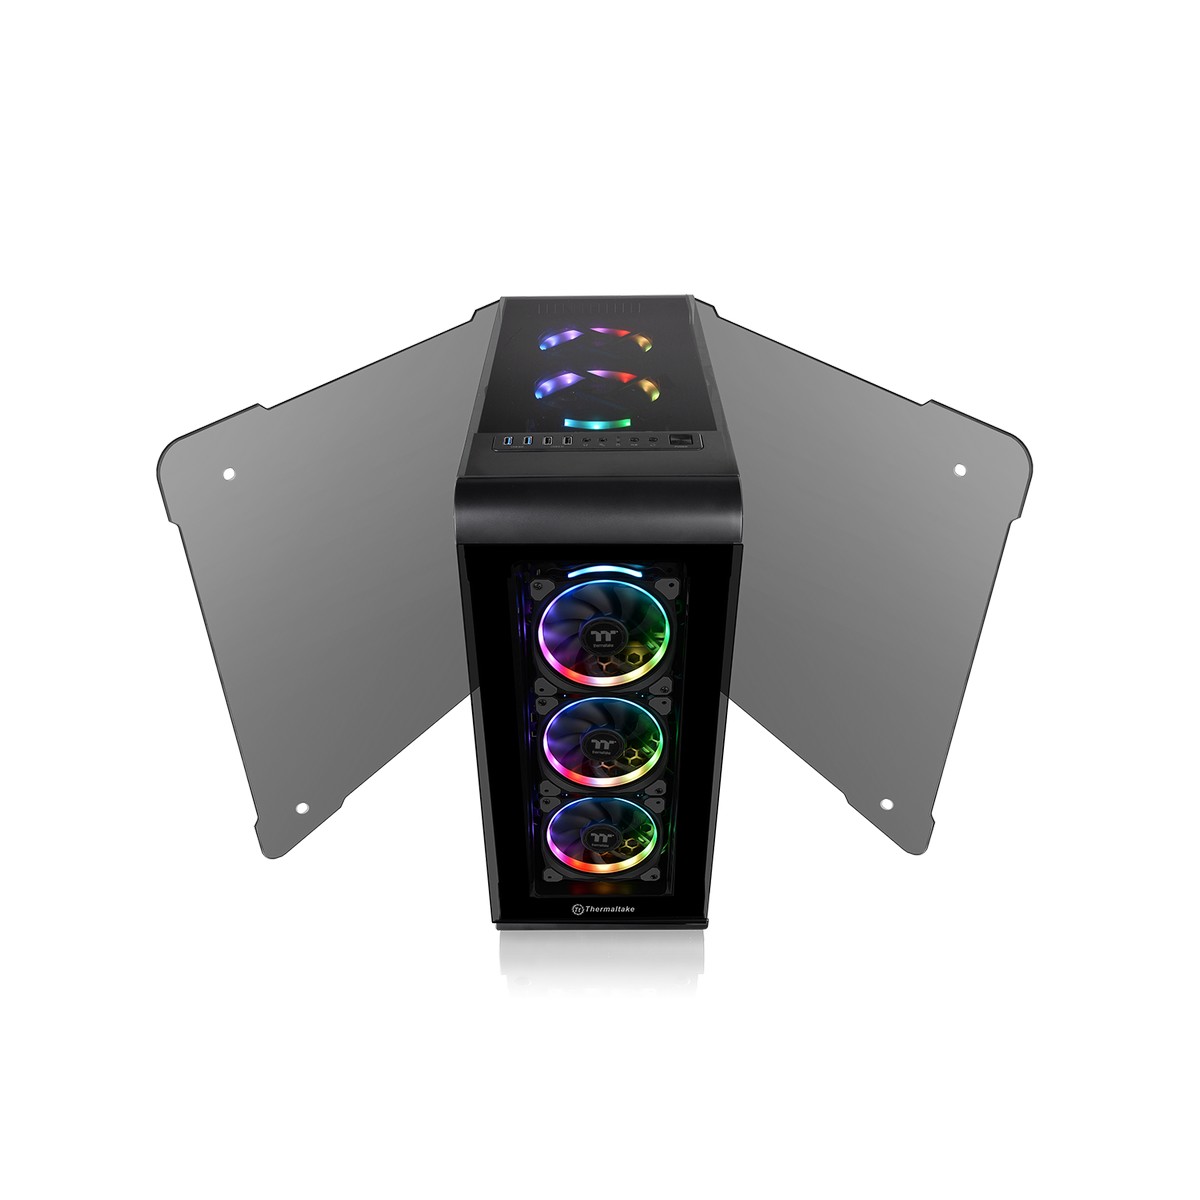 Thermaltake - Thermaltake View 32 RGB Midi Tower Gaming Case - Black Tempered Glass